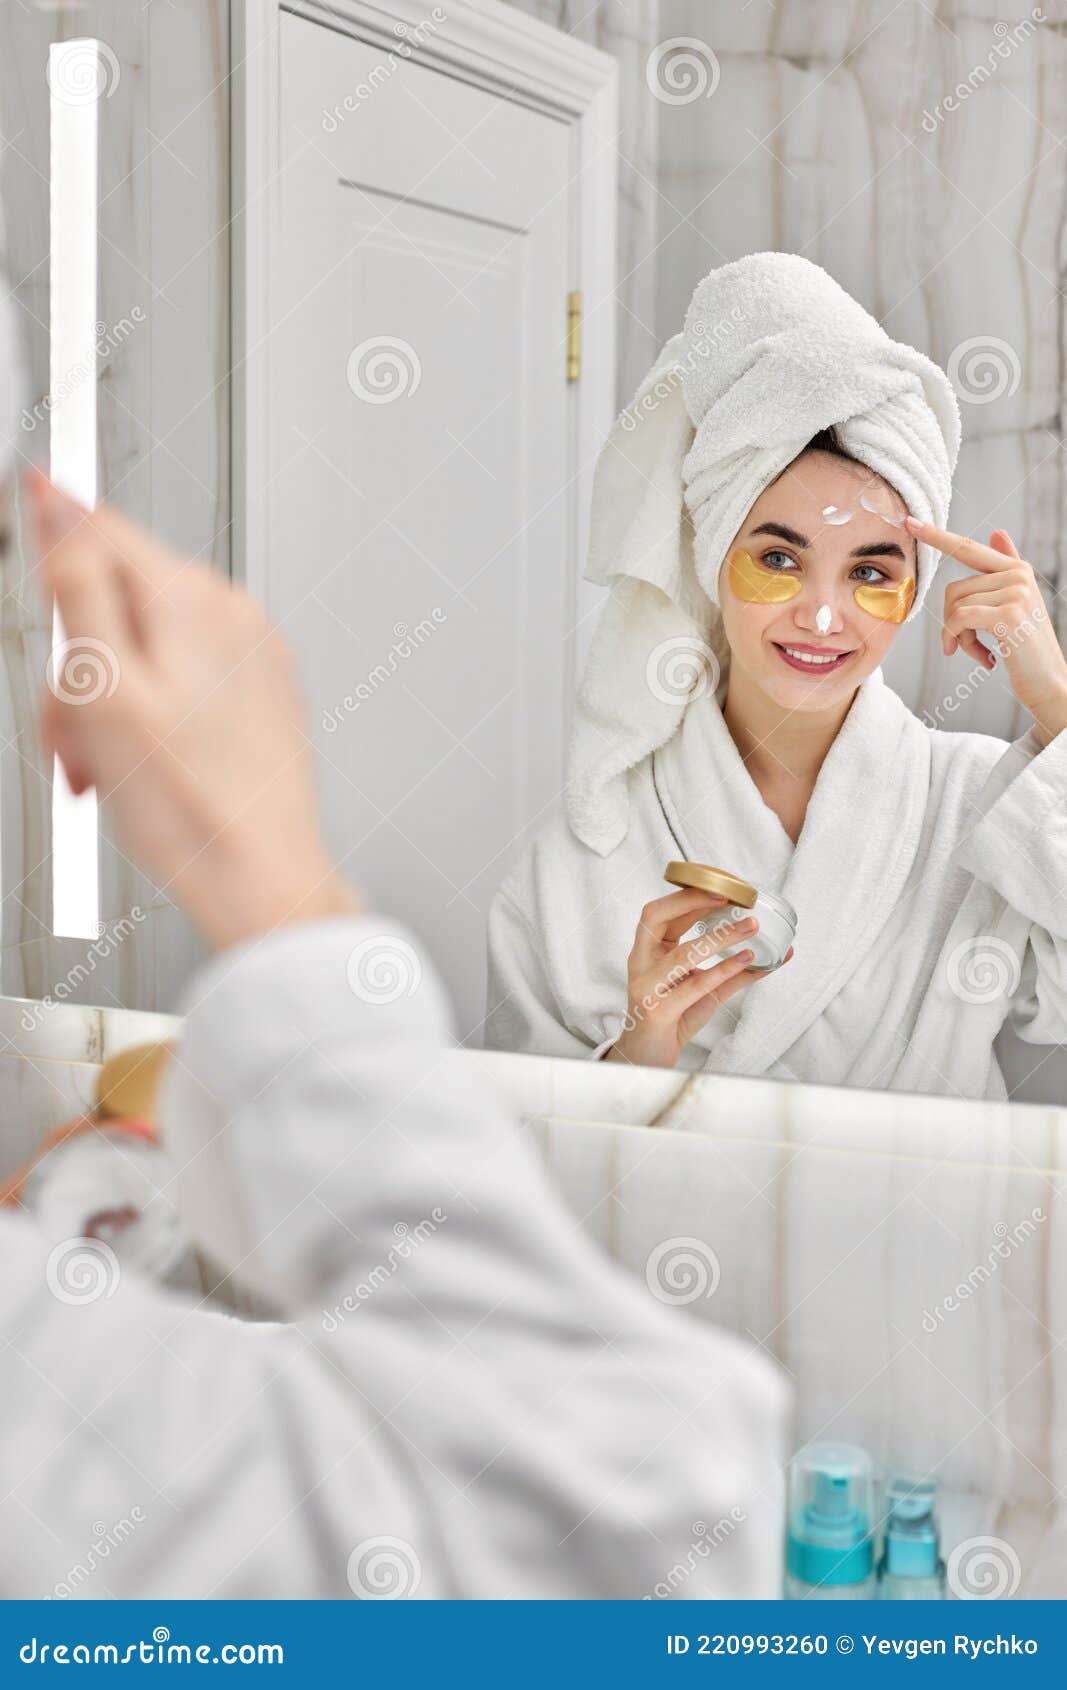 Hermosa Mujer Con Parches En Los Ojos En Blancas En El Baño Foto de archivo - Imagen de esencial, retrato: